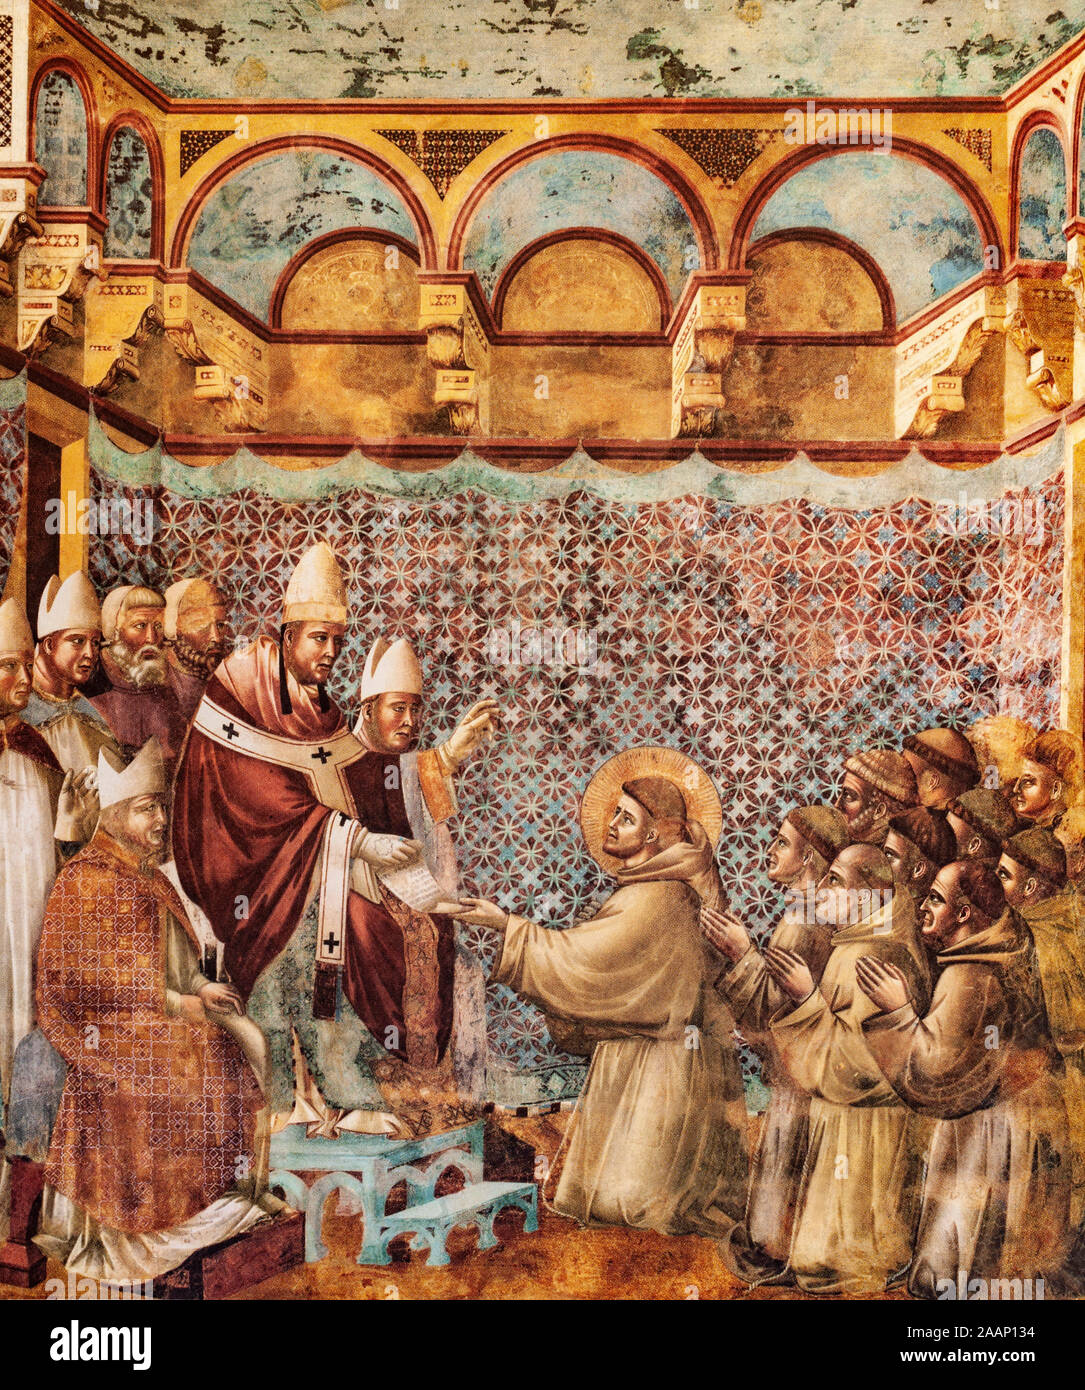 Un affresco dipinto nella Basilica Superiore di Assisi, probabilmente opera di Giotto di Bondone (1266-1337) mostra San Francesco di Assisi ricezione della conferma di ammissione della sua comunità religiosa nel 1210 da Papa Innocenzo III. Foto Stock